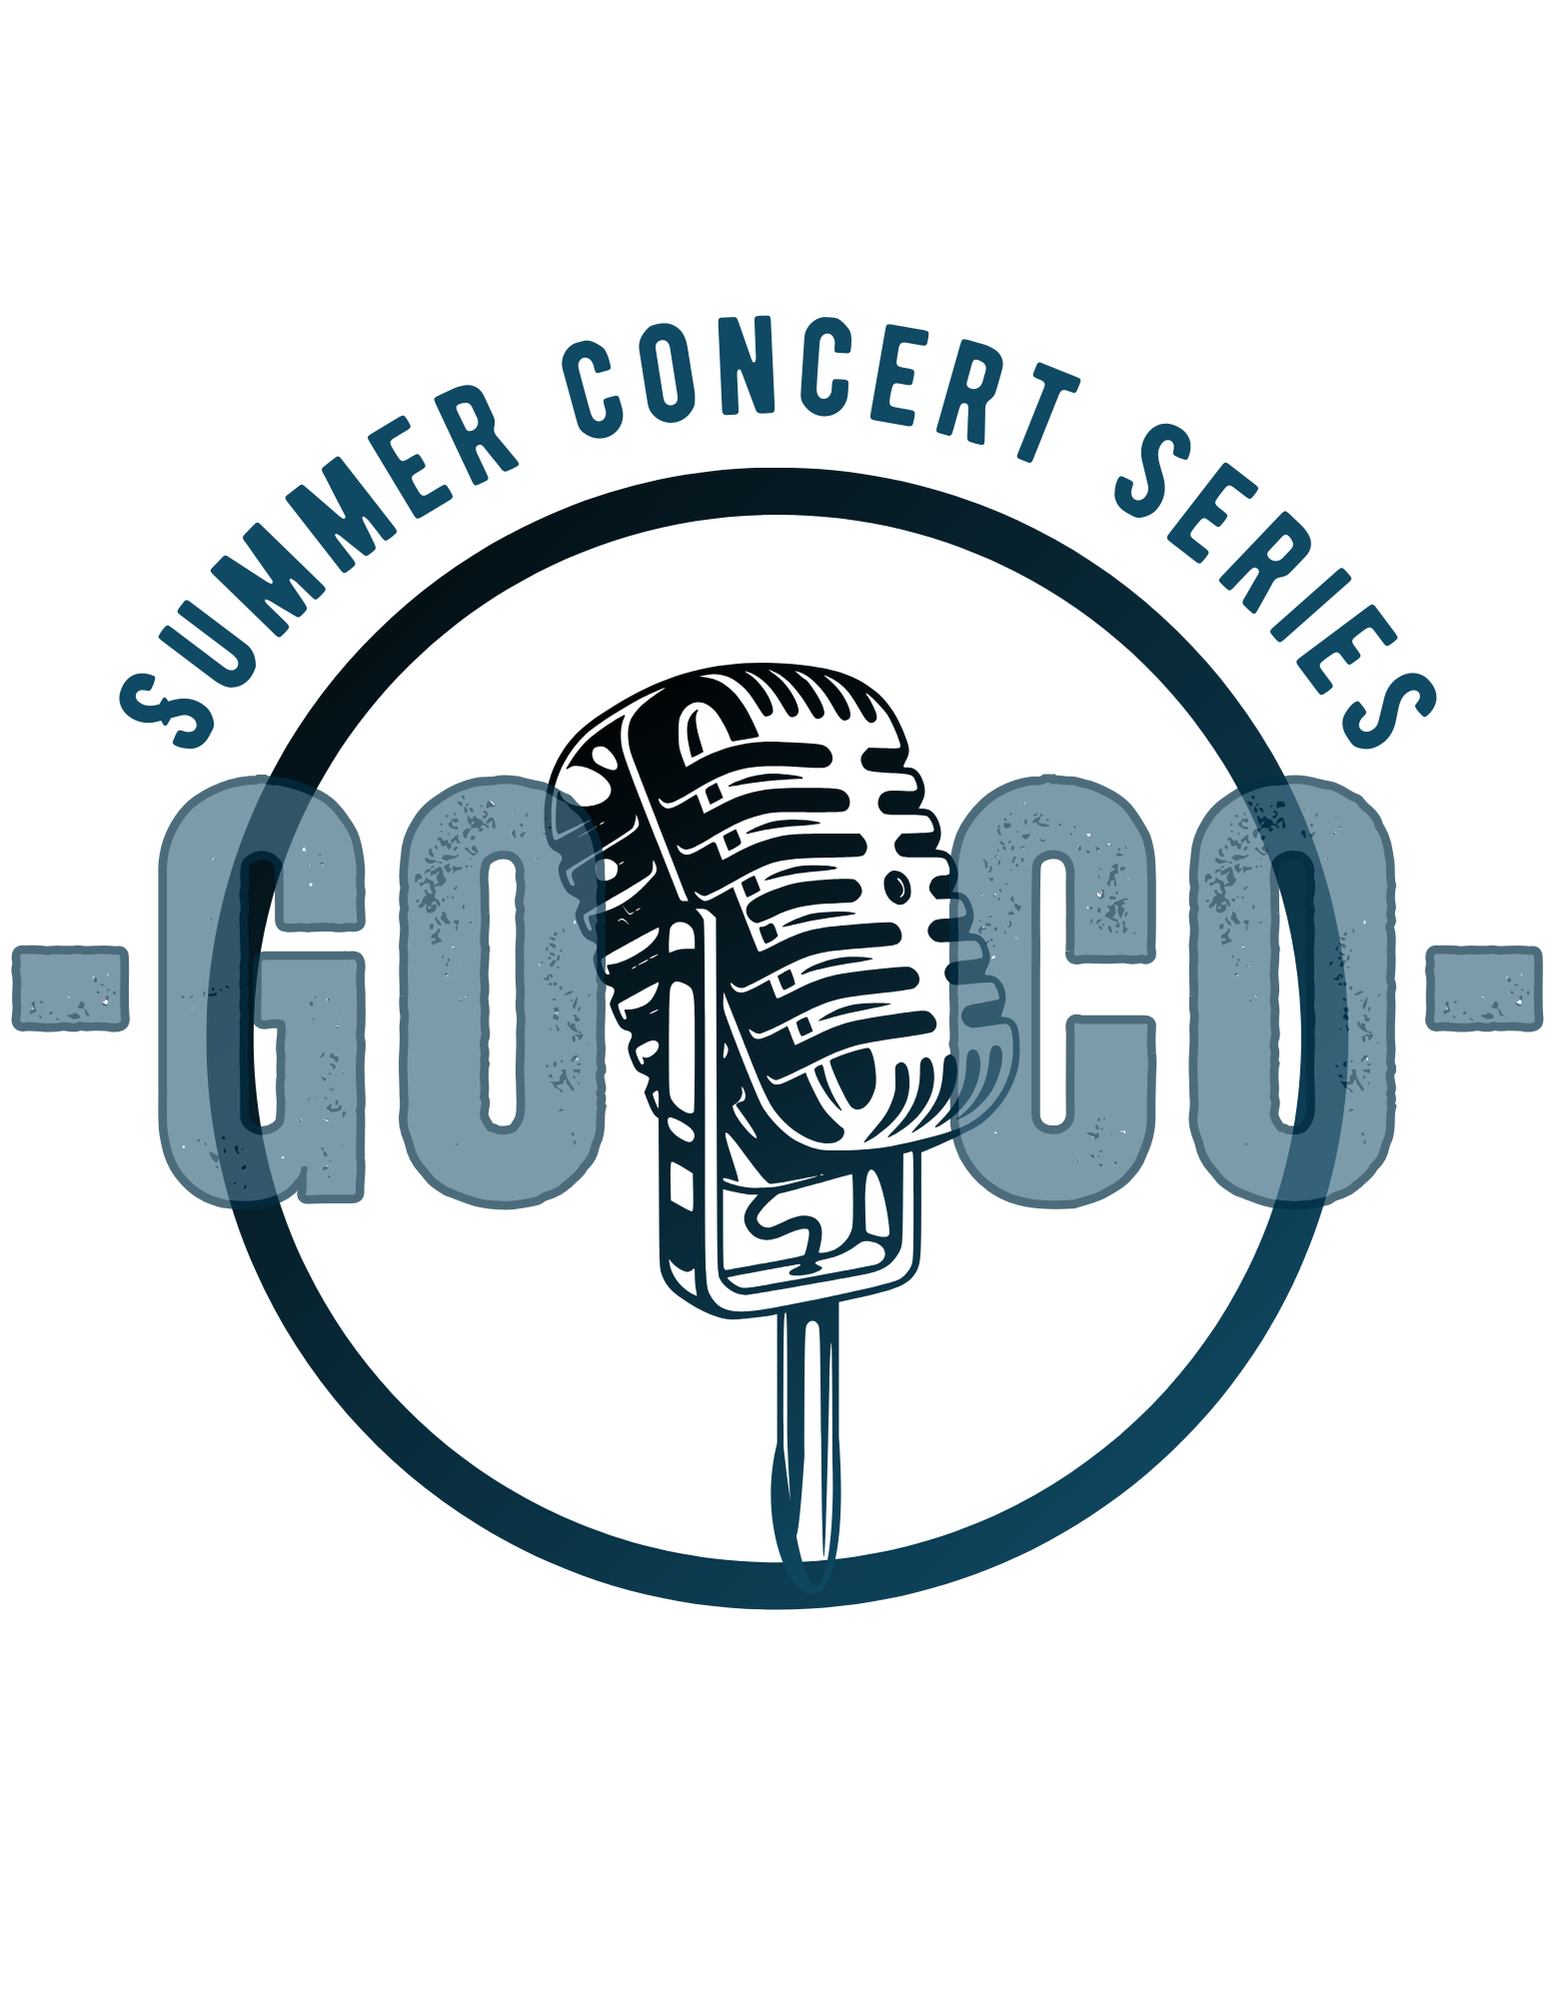 Summer concert series logo